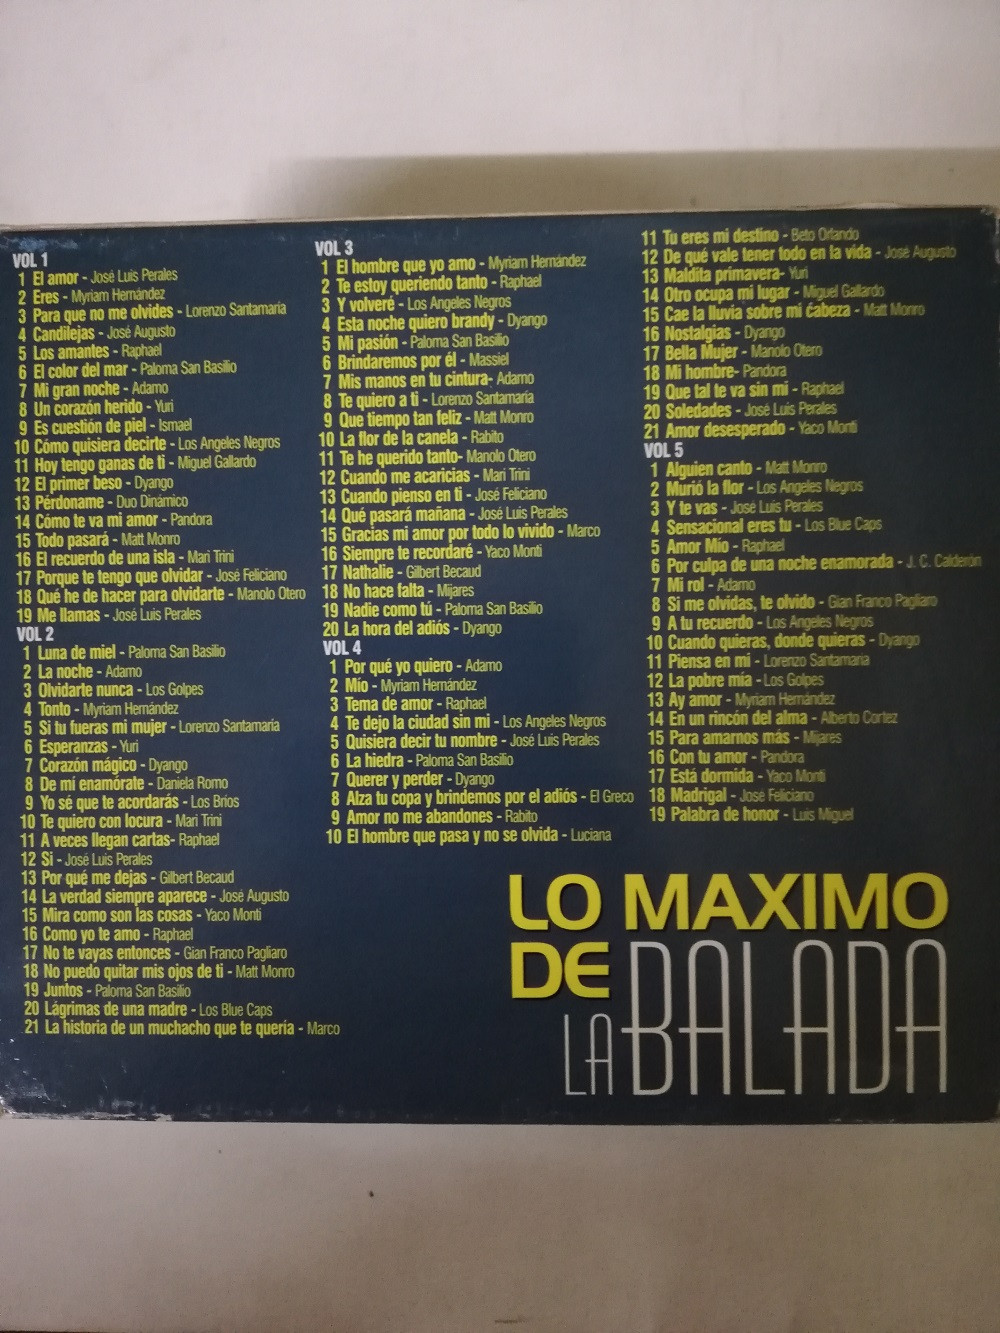 Imagen CD X 5 LO MÁXIMO DE LA BALADA - ARTISTAS VARIOS 2